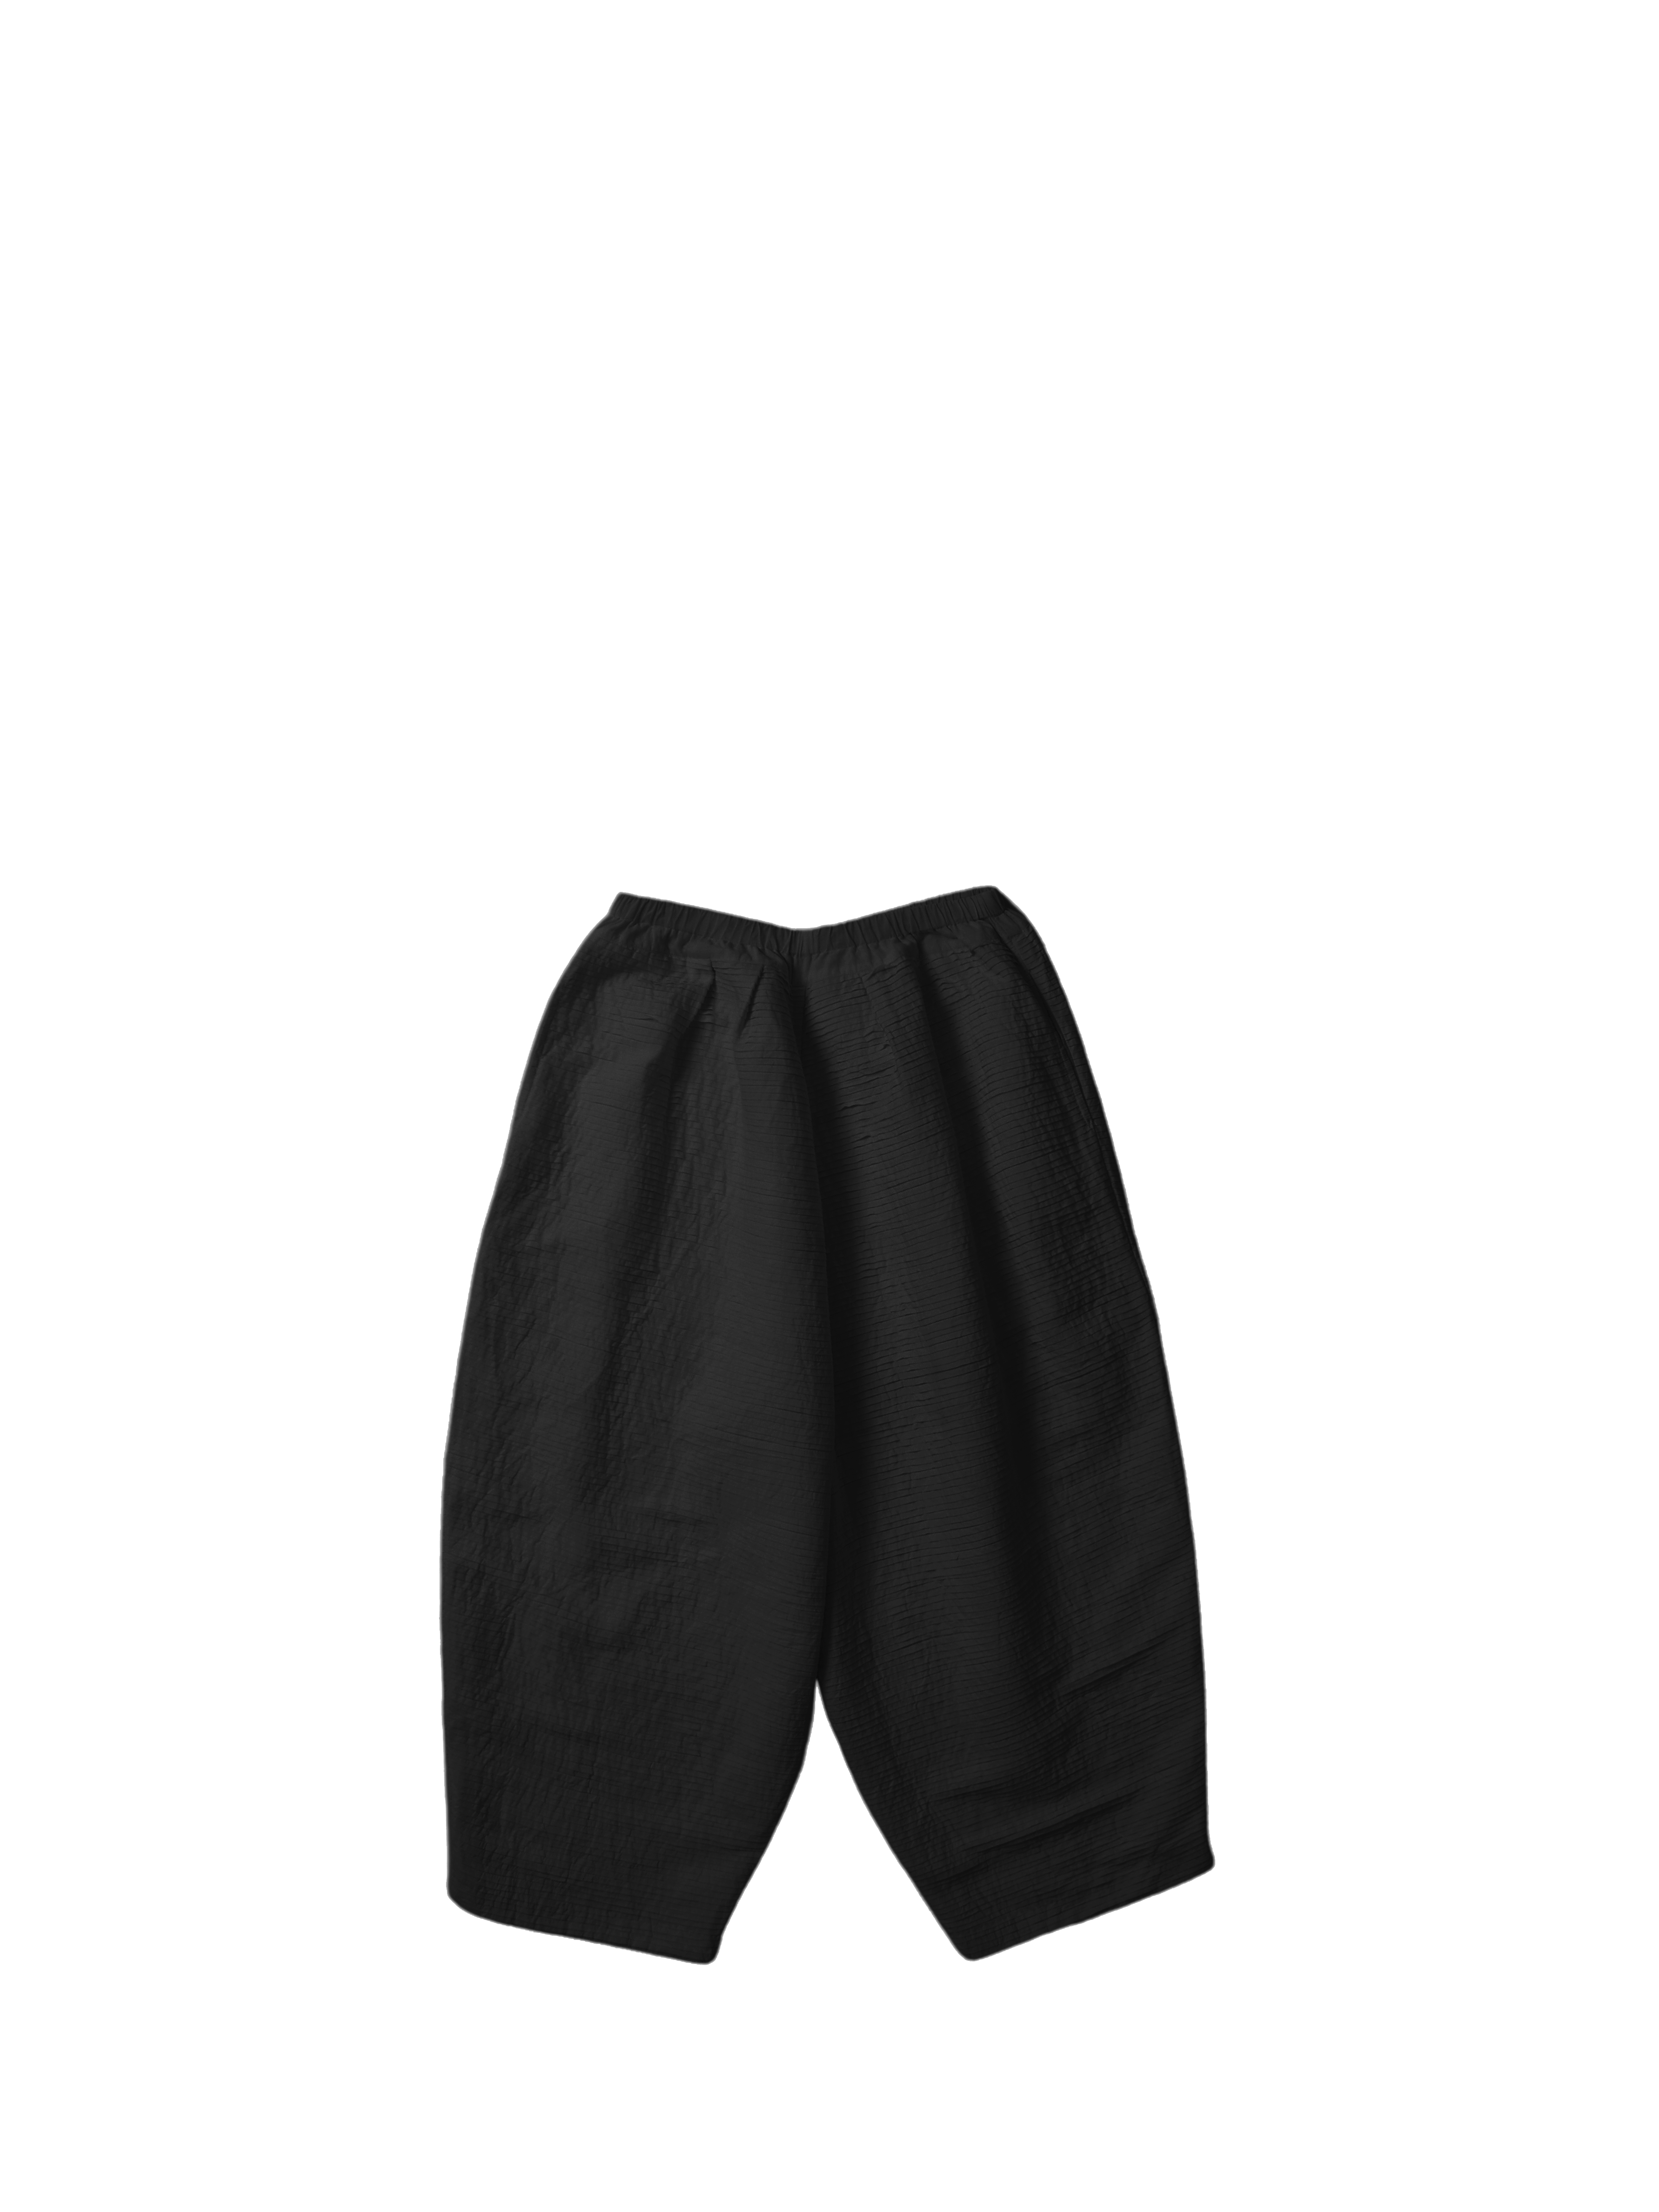 Pin on Basketball shorts